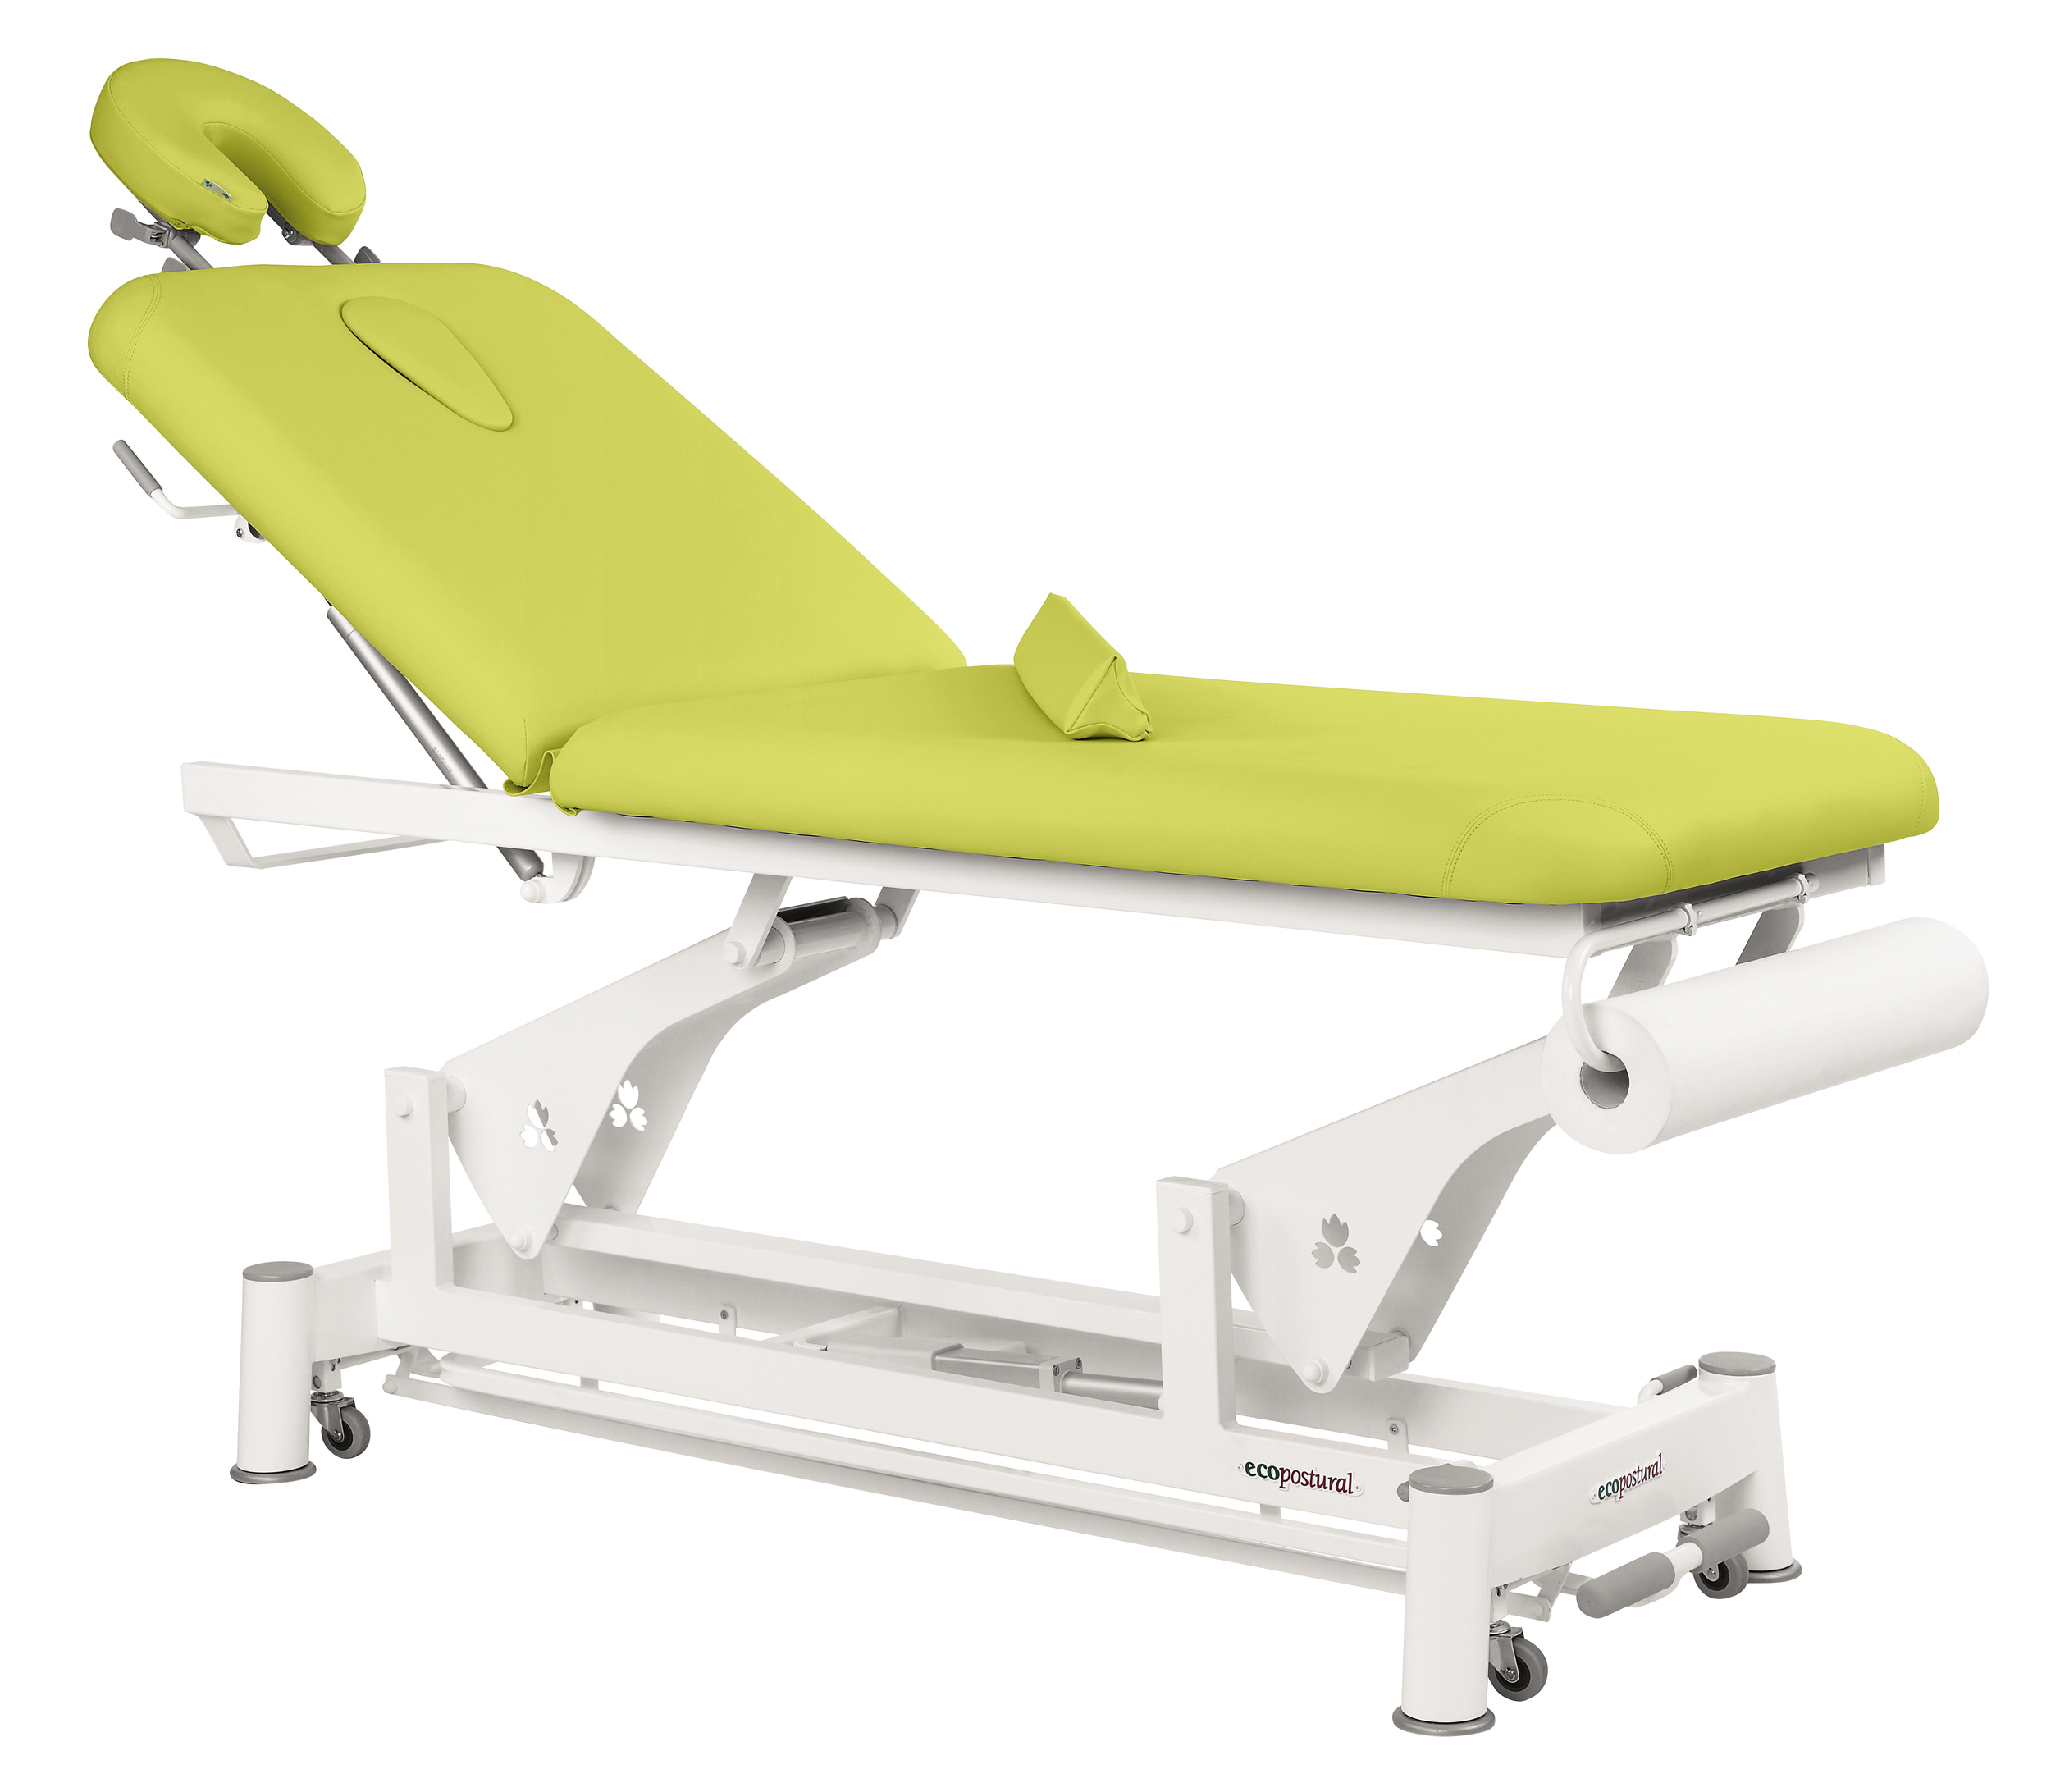 table de massage kiné électrique deux plans ecopostural modèle C5502 tablelya